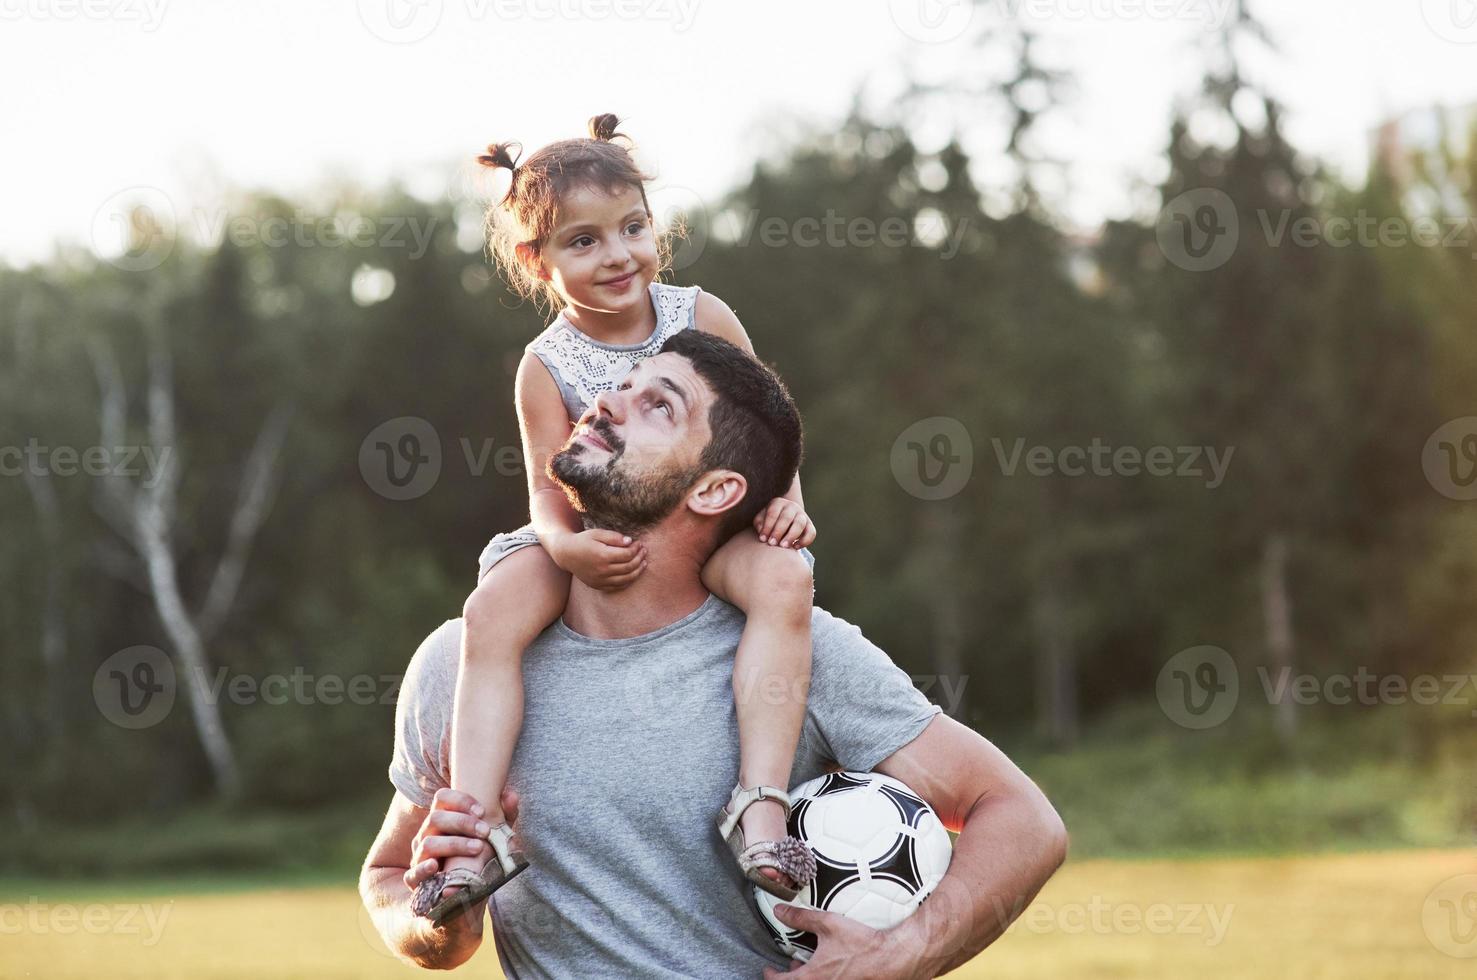 het draait allemaal om het gezin. foto van papa met zijn dochter op mooi gras en bos op de achtergrond